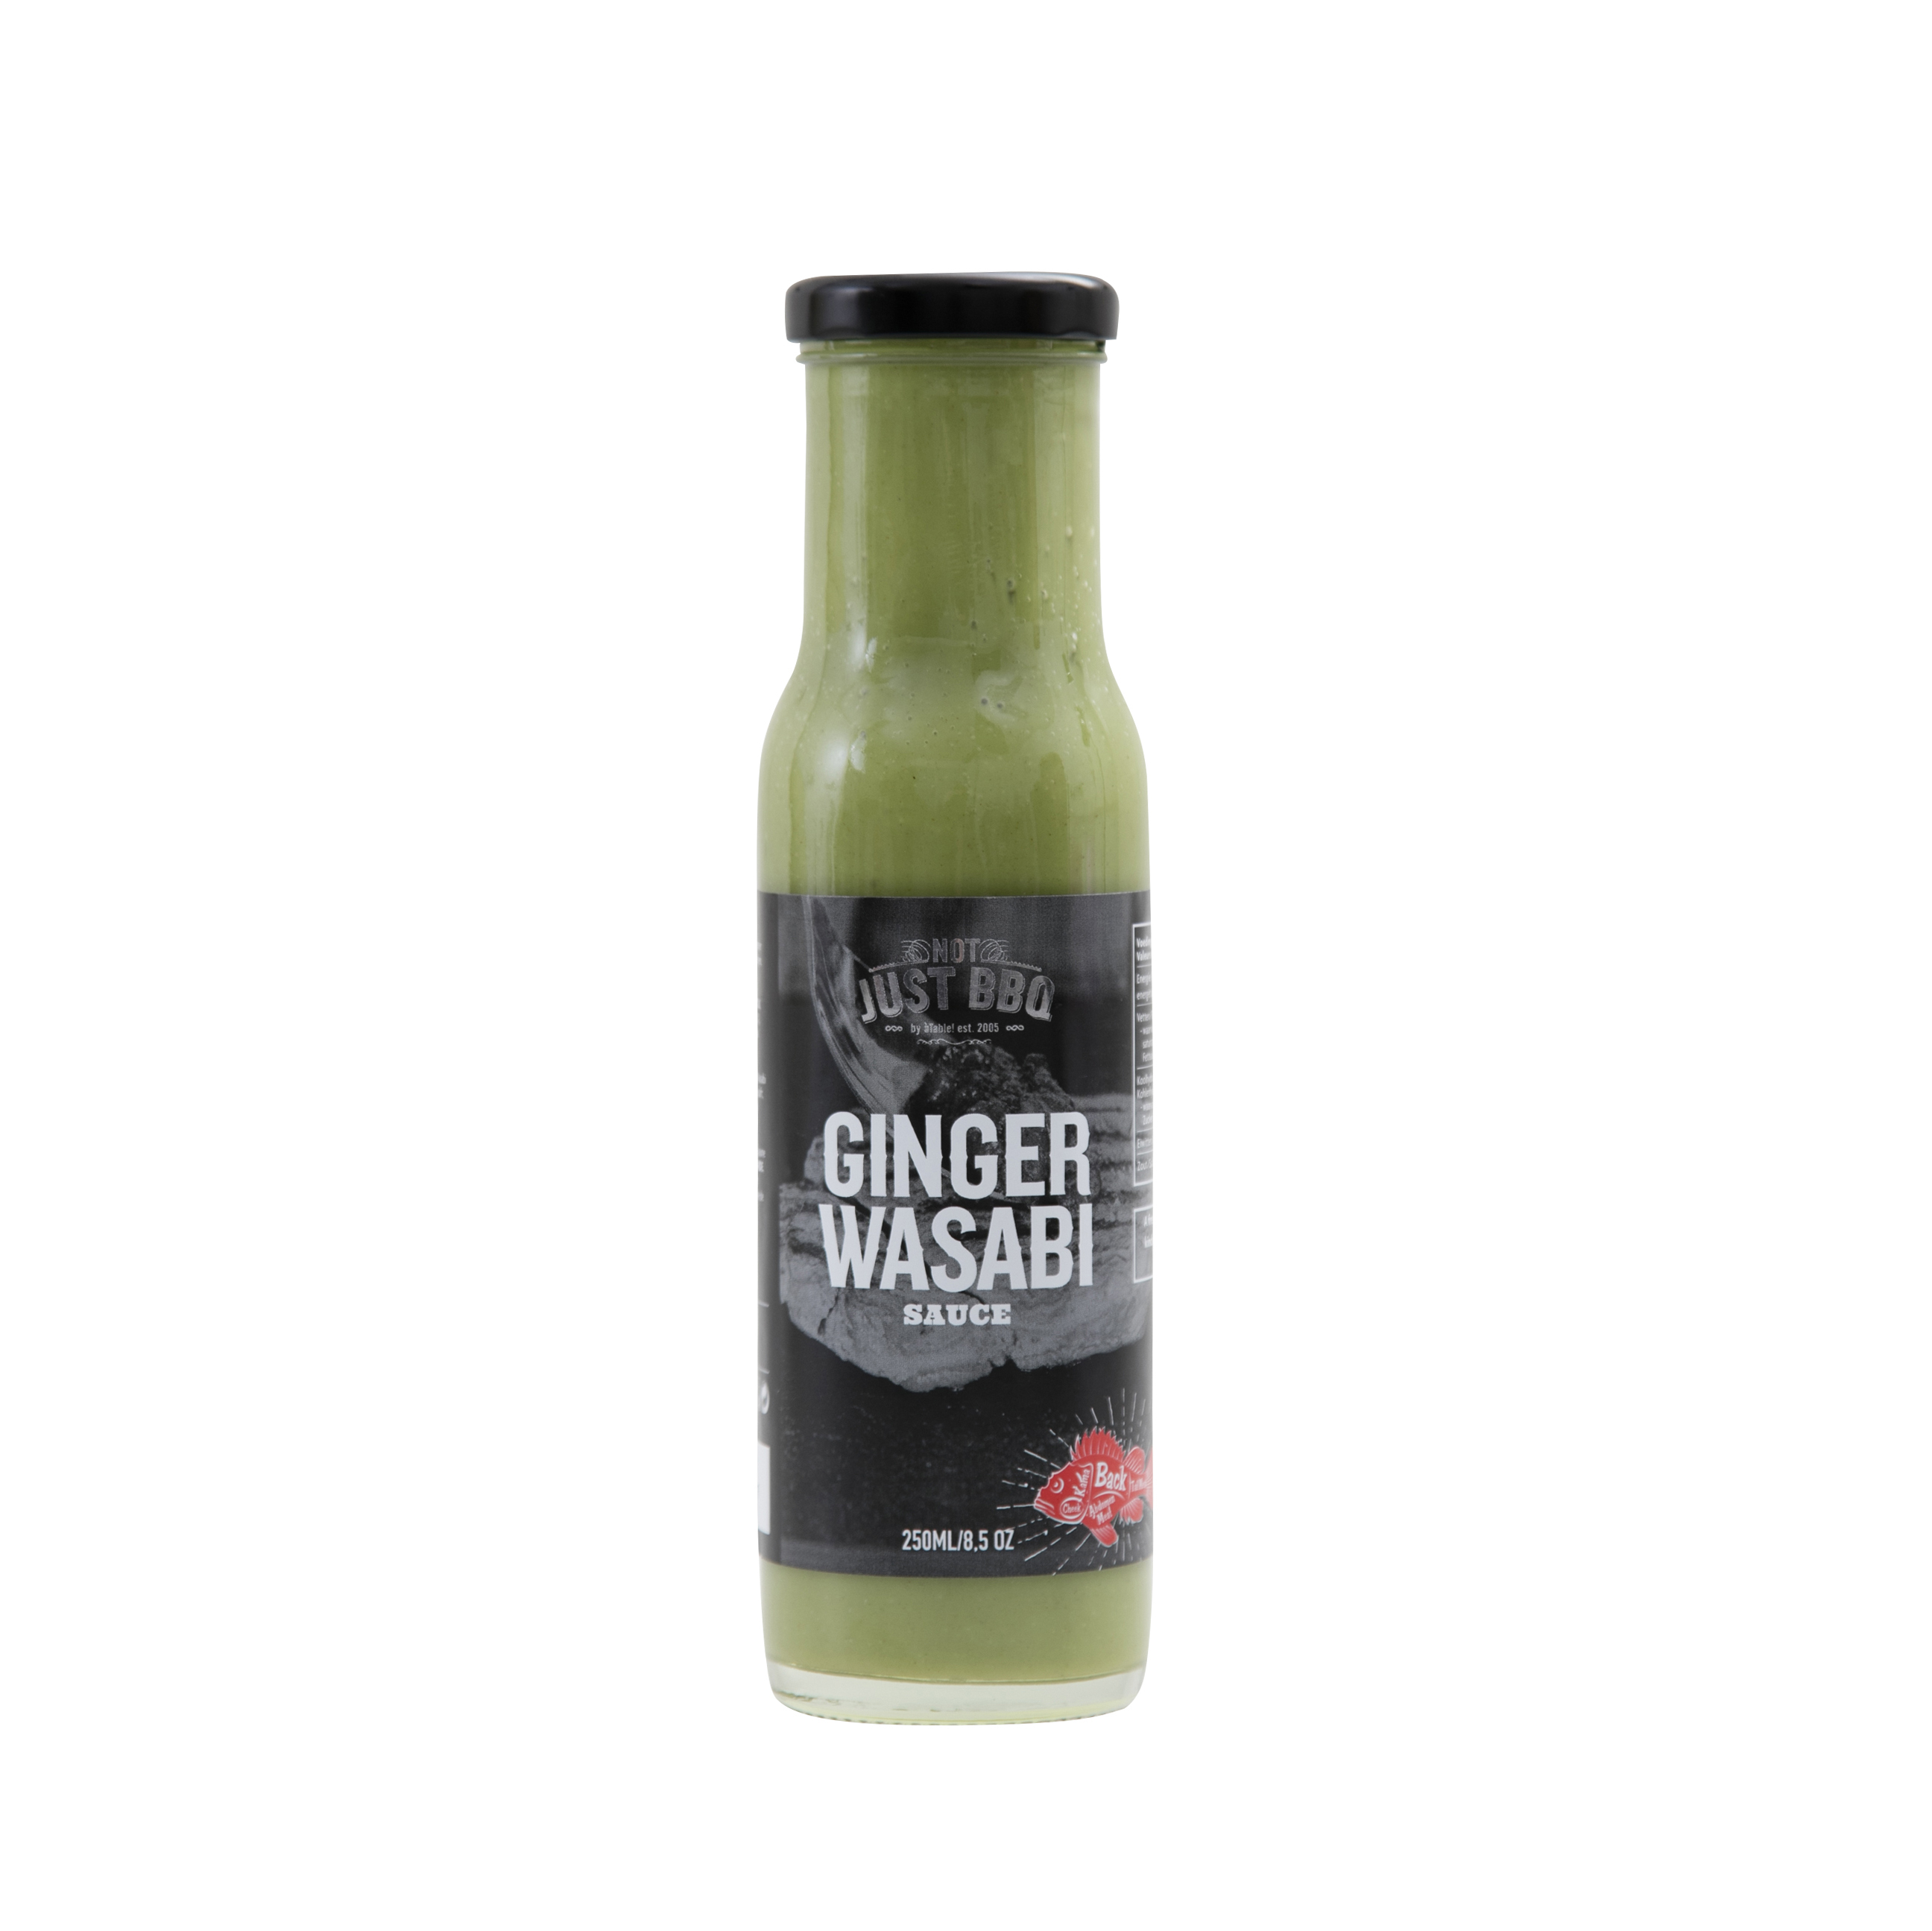 Ginger wasabi Sauce 250ml